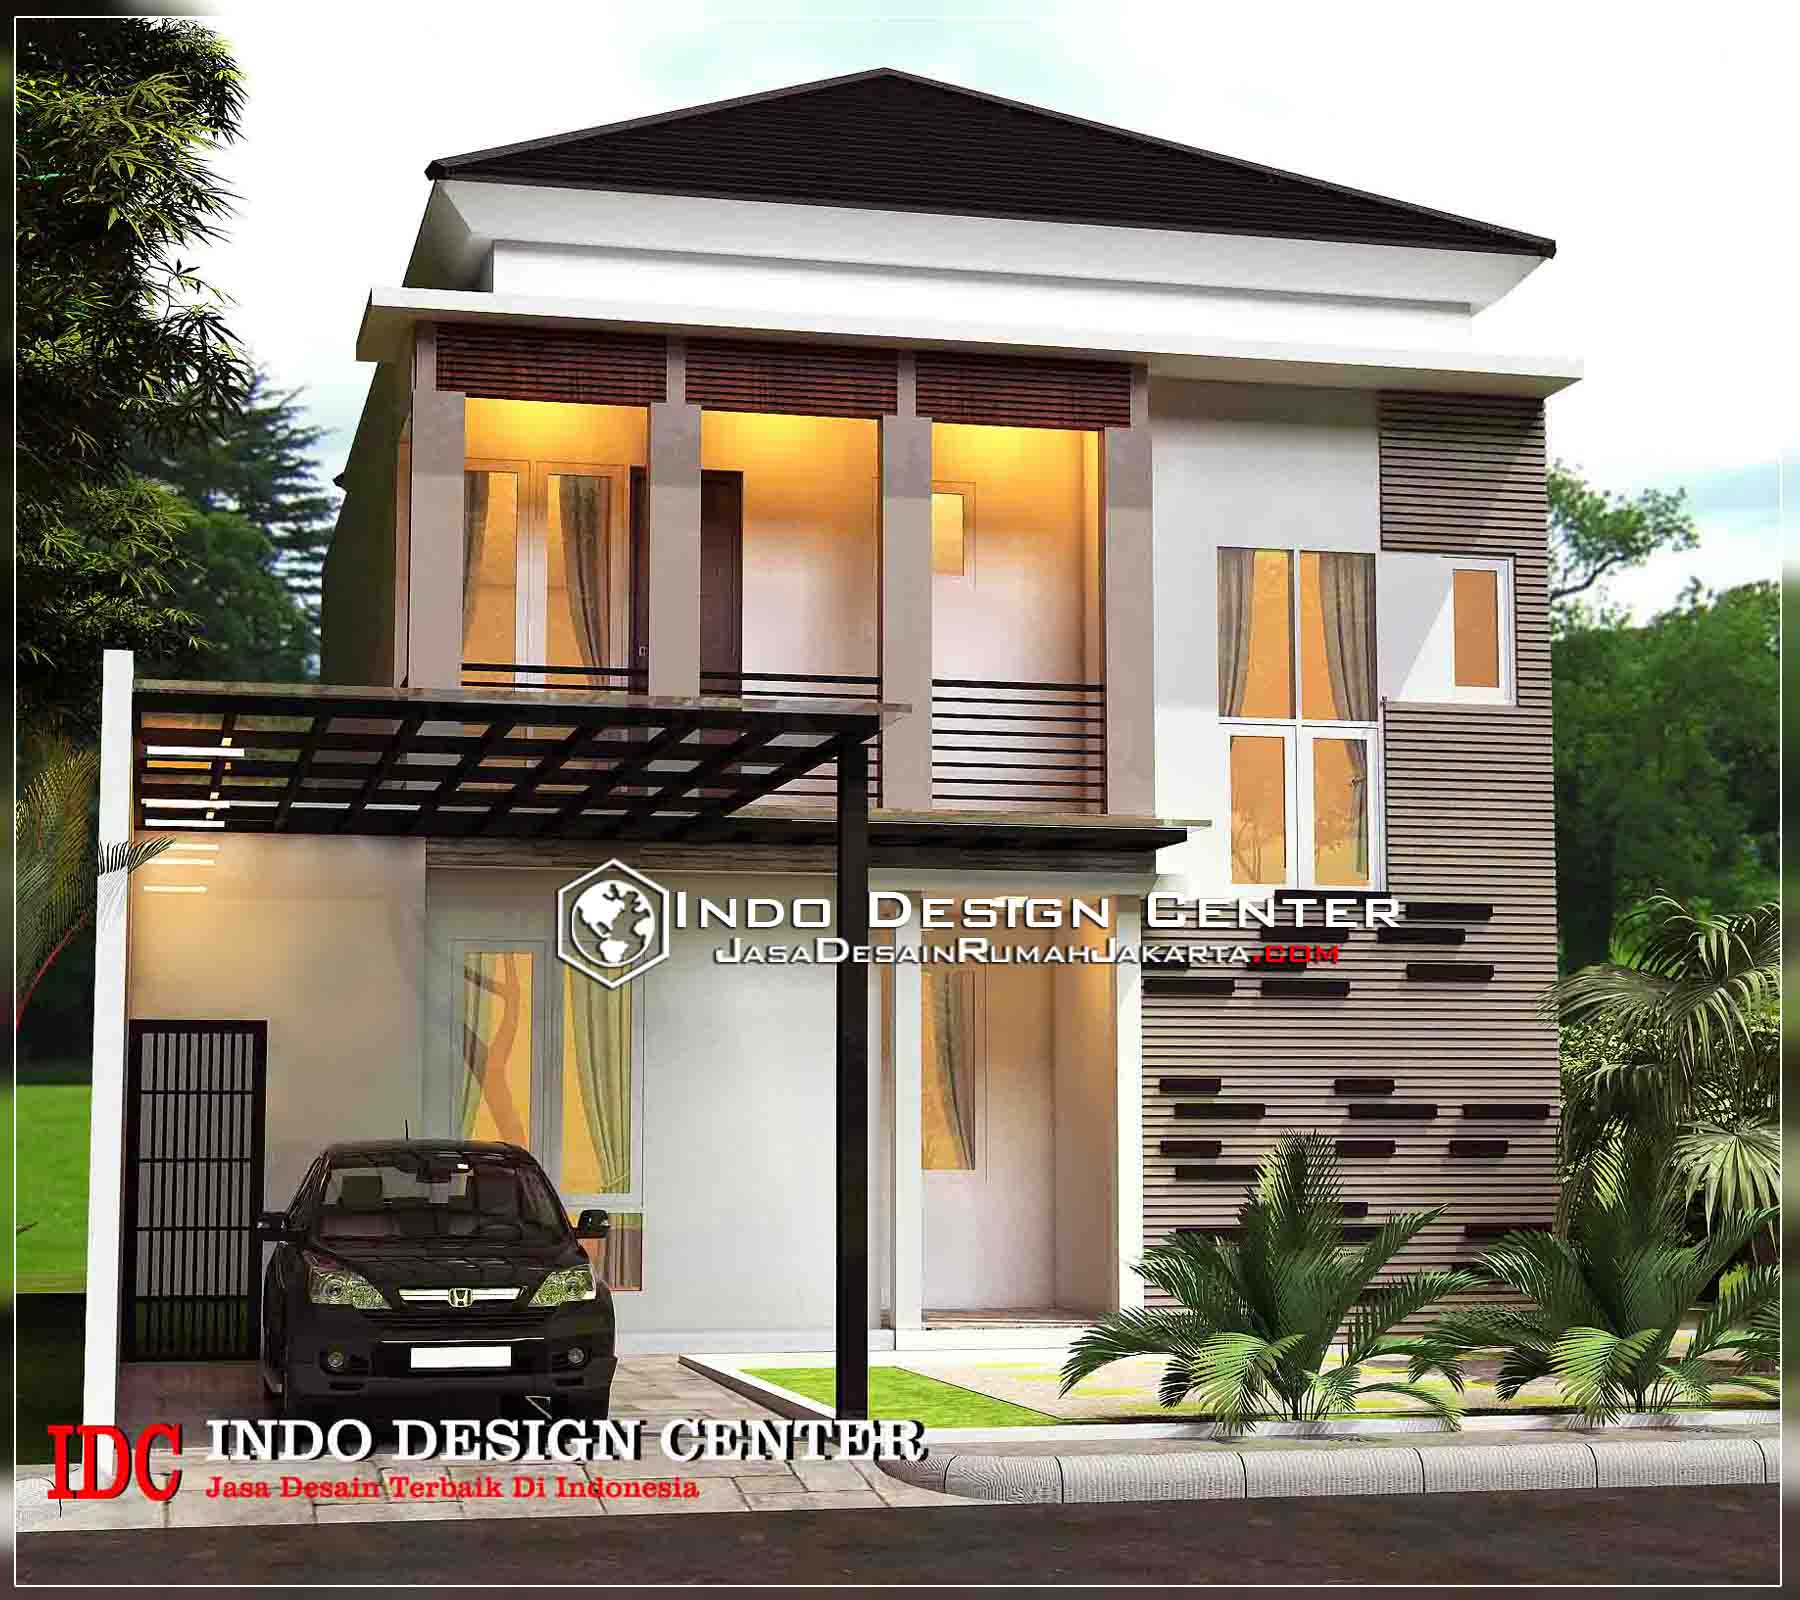 66 Gambar Desain Rumah Minimalis 2 Lantai Harga Murah Kreatif Banget Deh Deagam Design